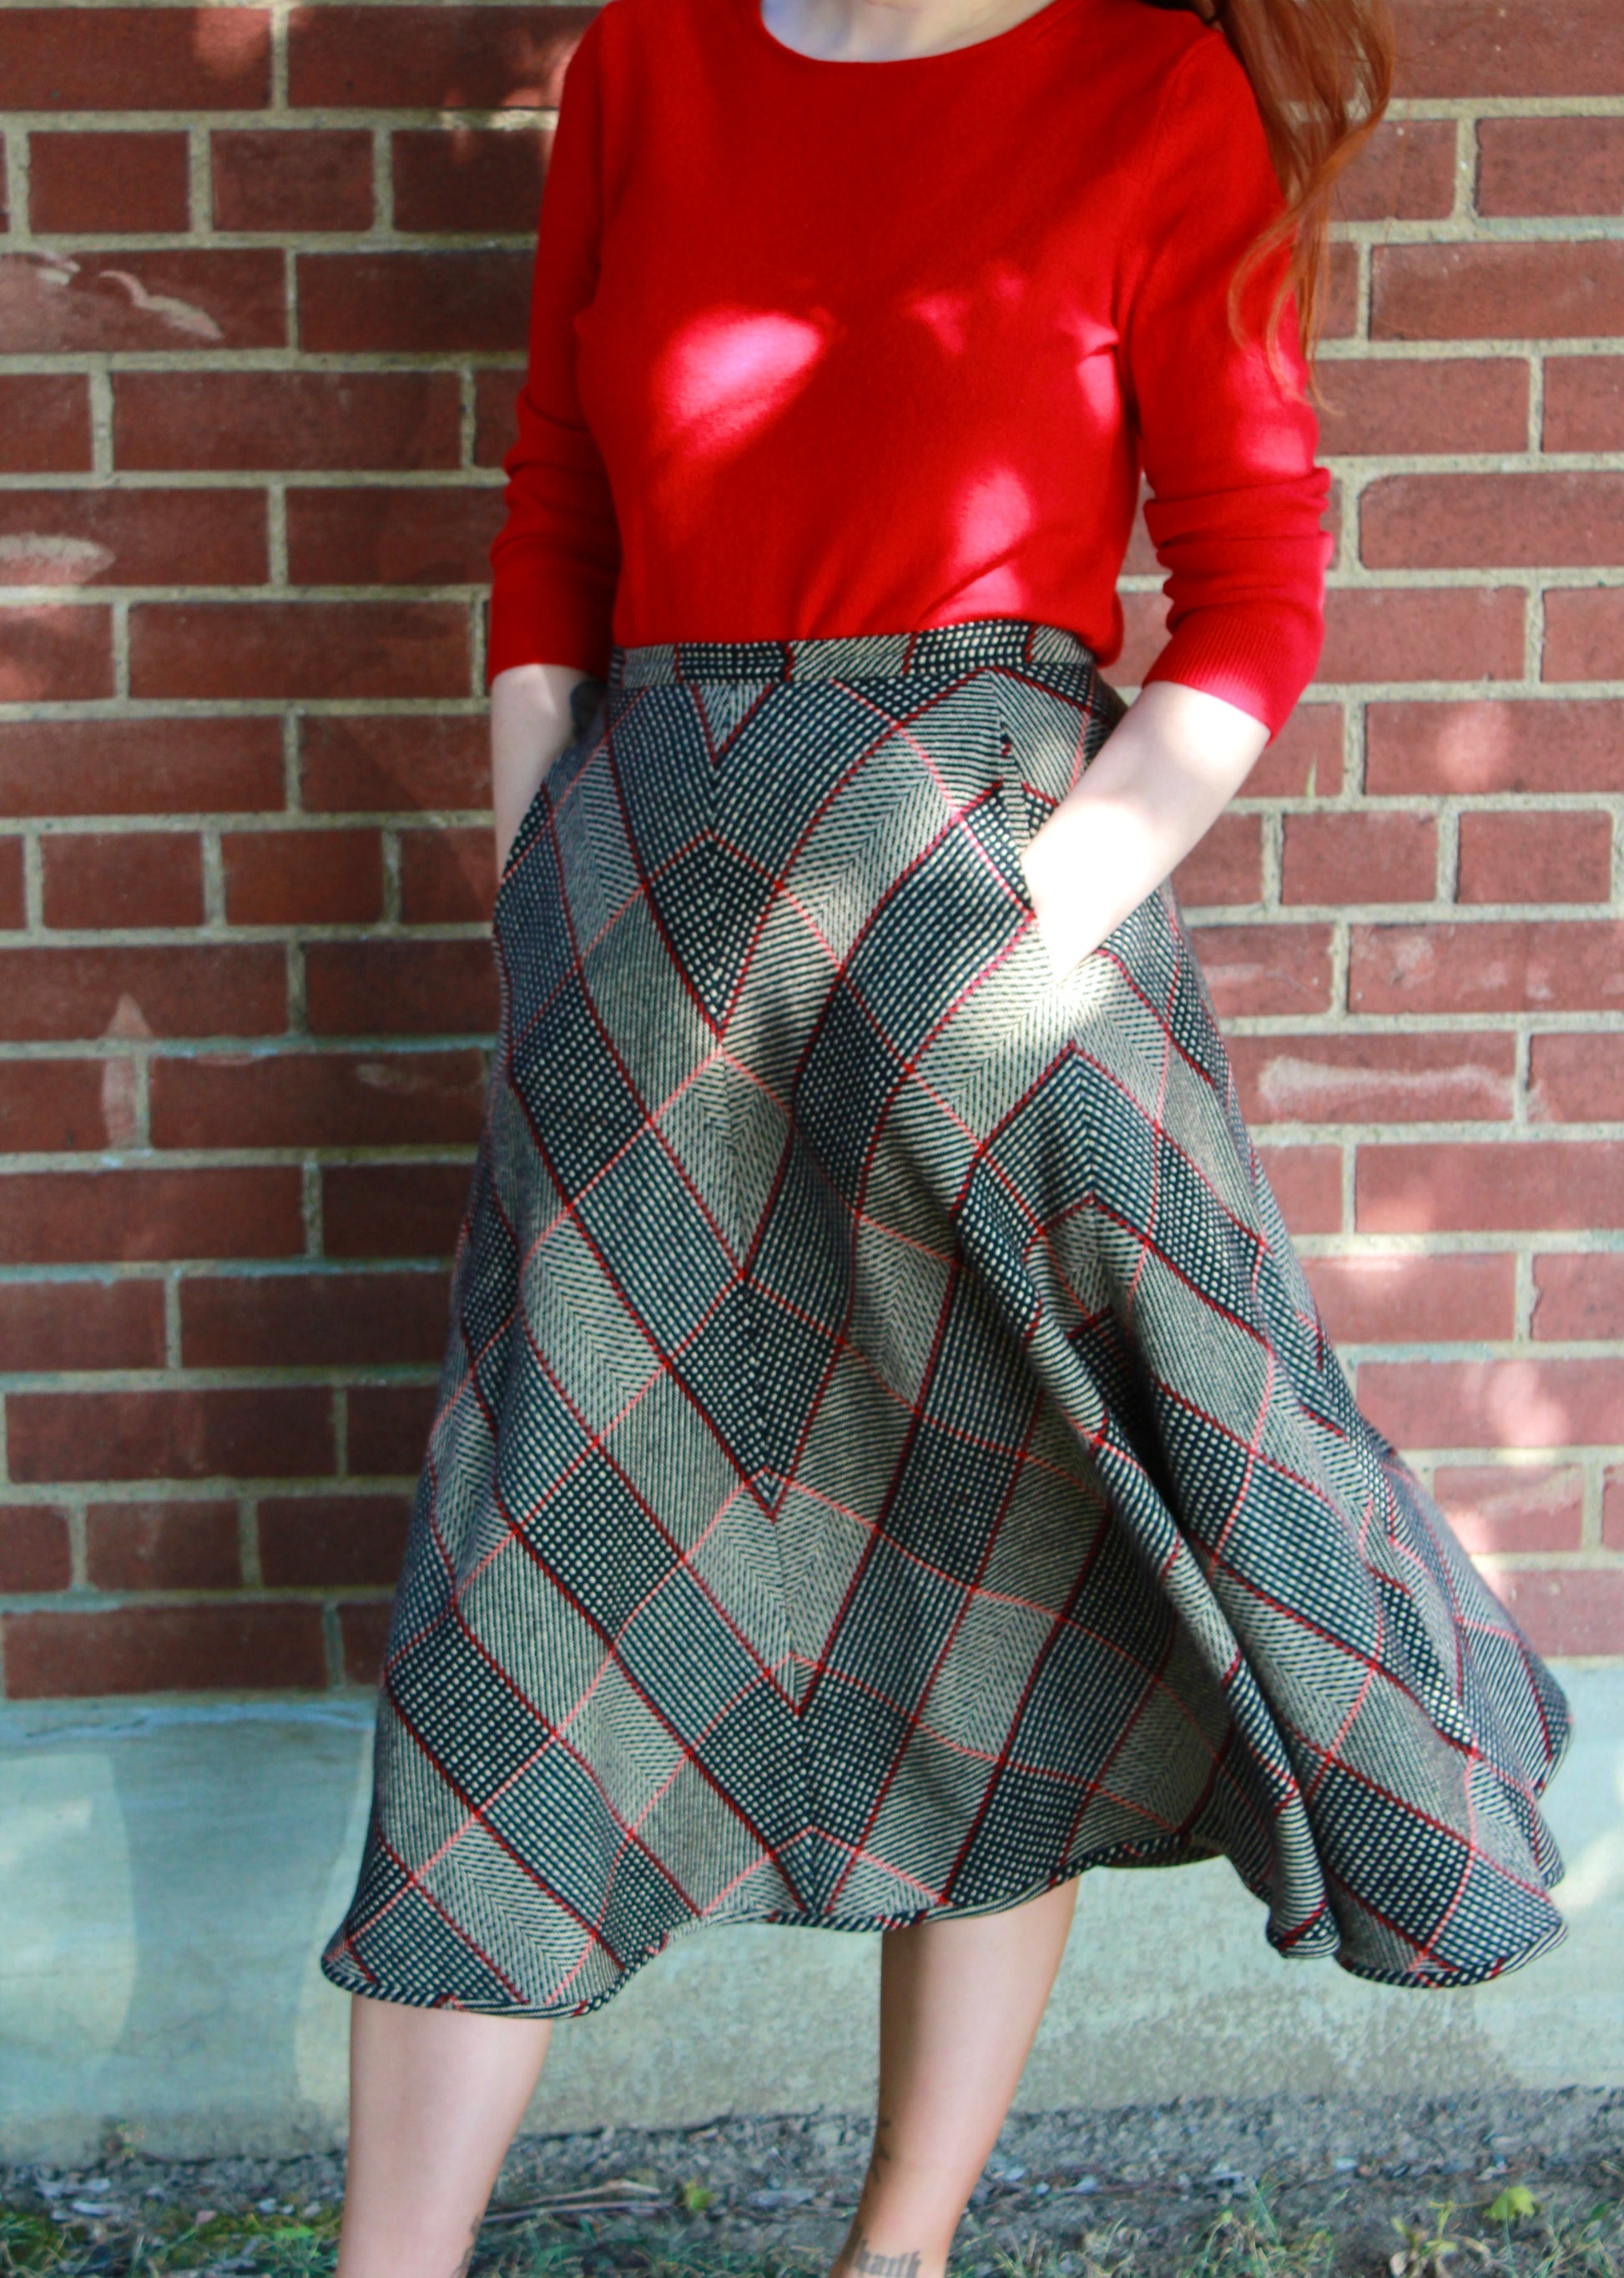 Vintage Cashmere Sweater Bundle, 3 Pieces: Red & Grey, L